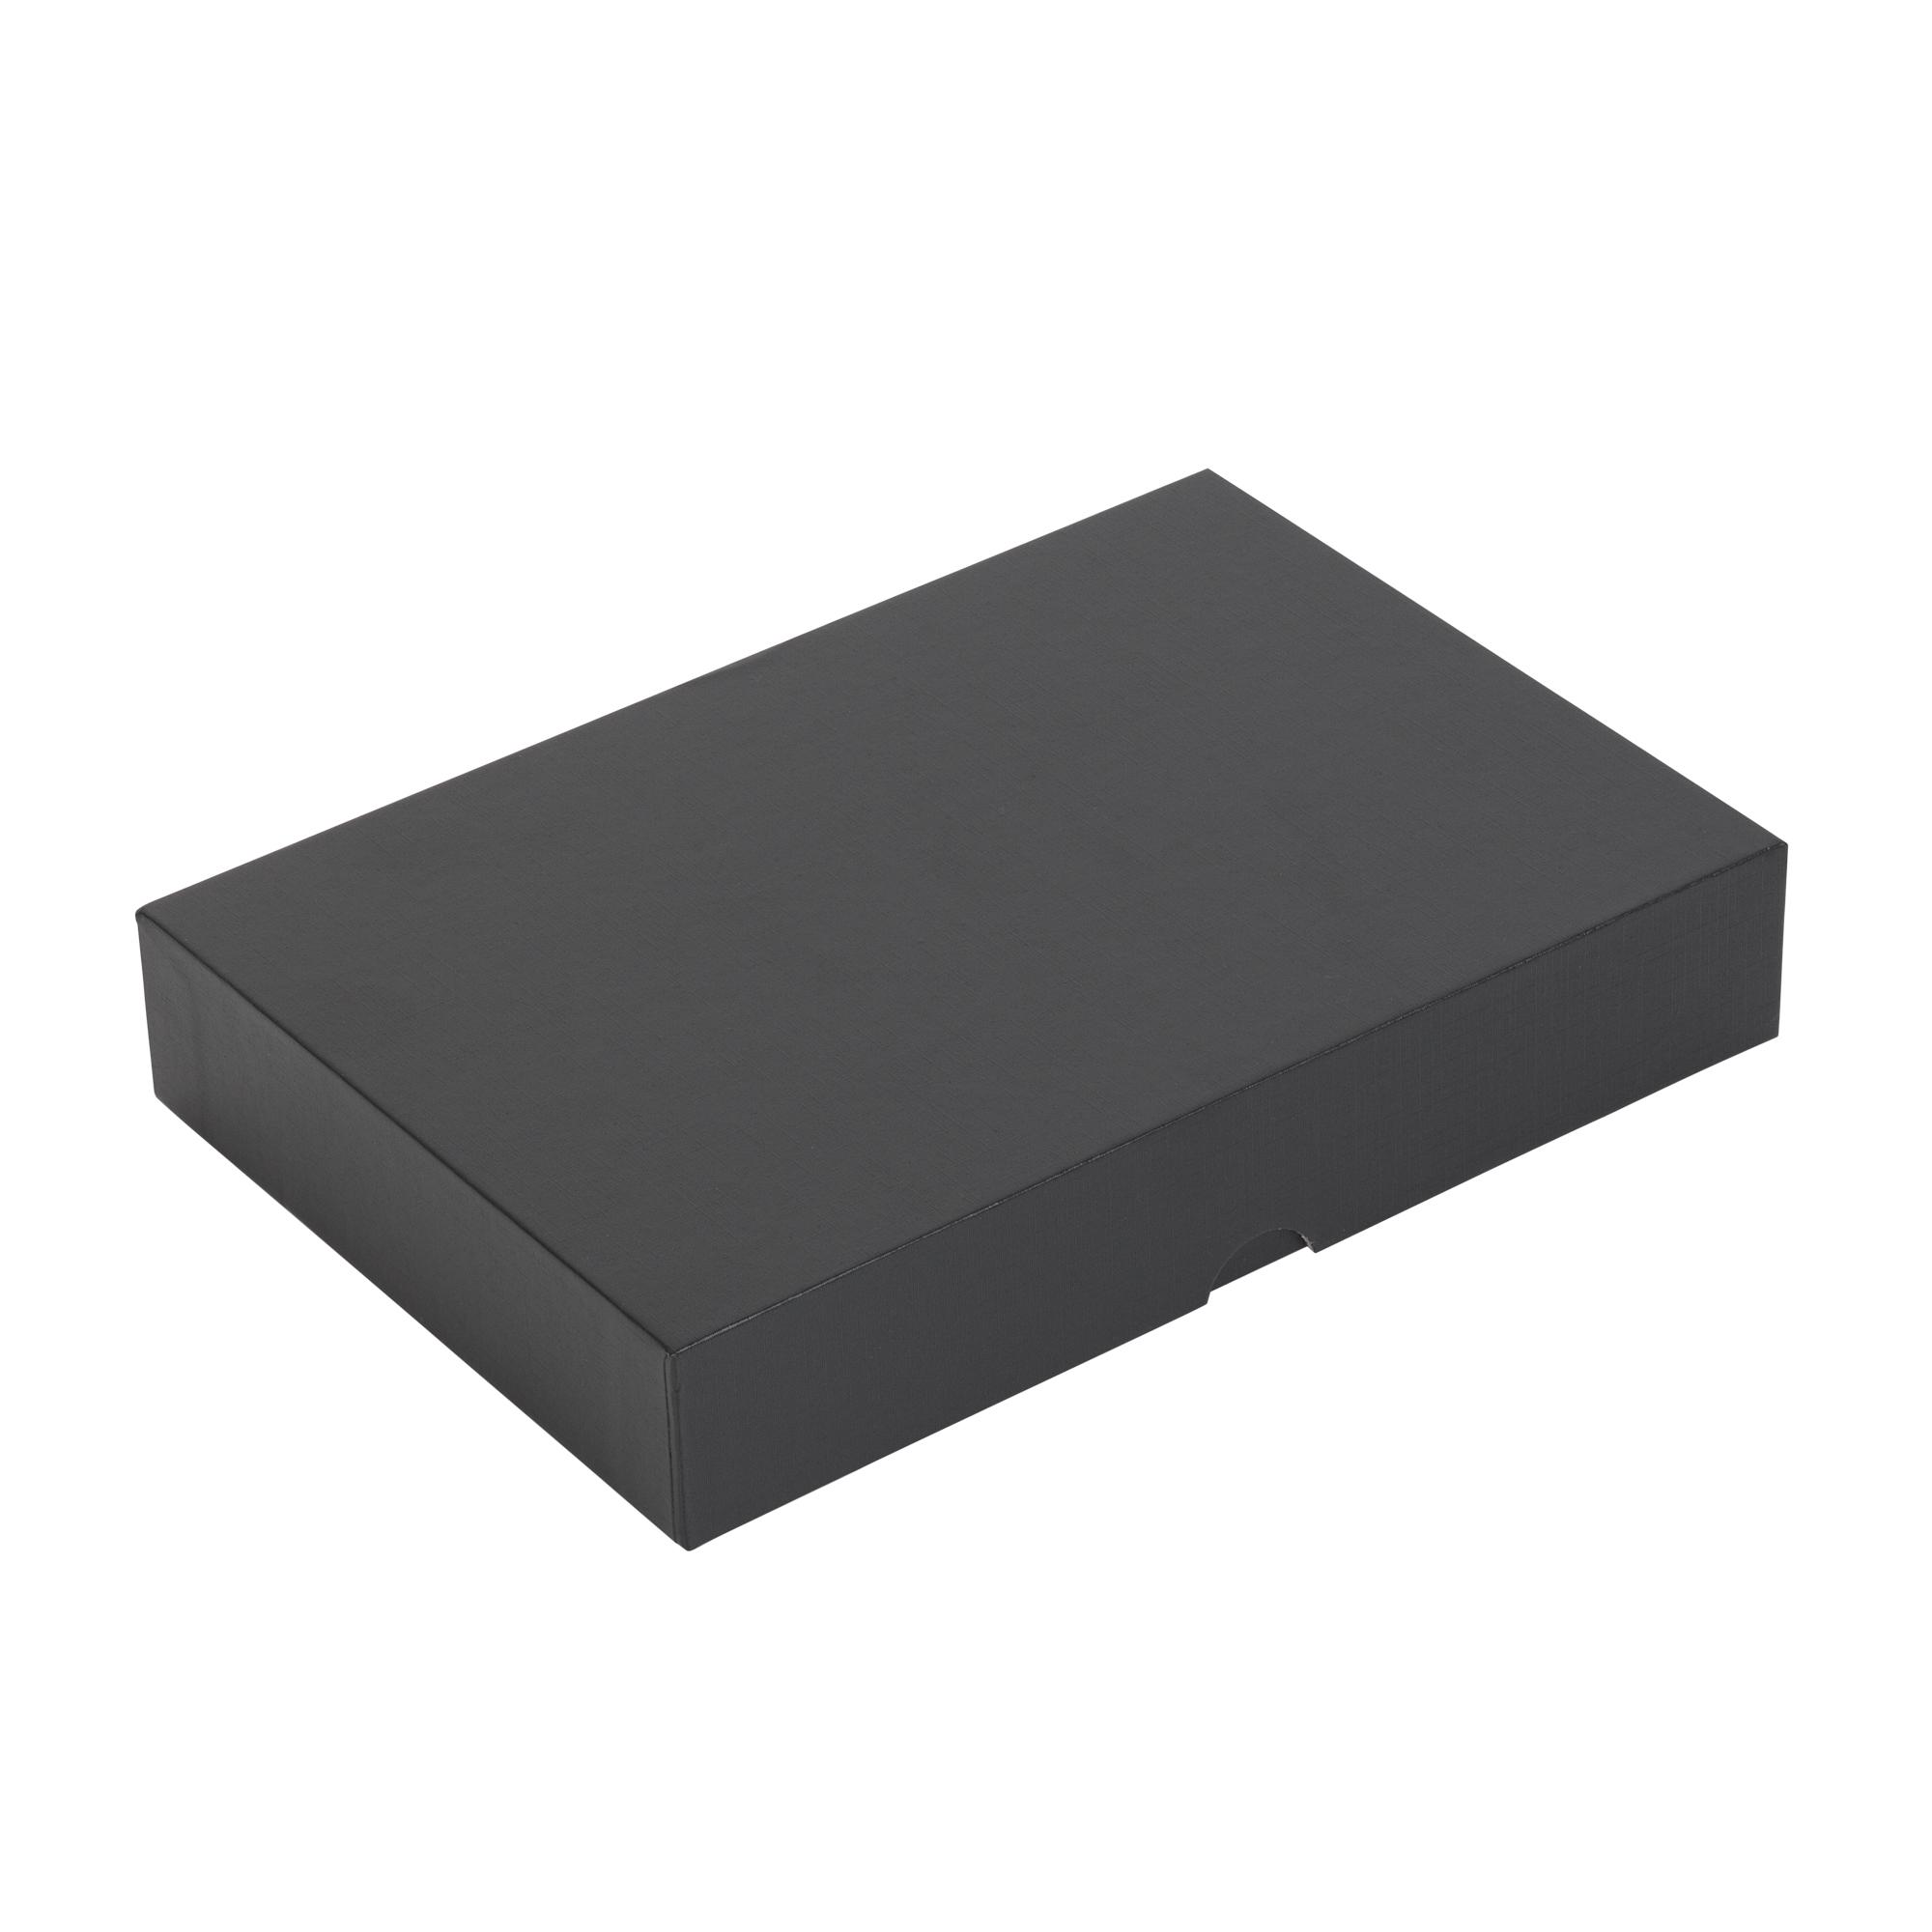 Набор "Камень" на 3 предмета, 4000 mAh /16Gb, с покрытием soft grip, цвет черный, фото 2